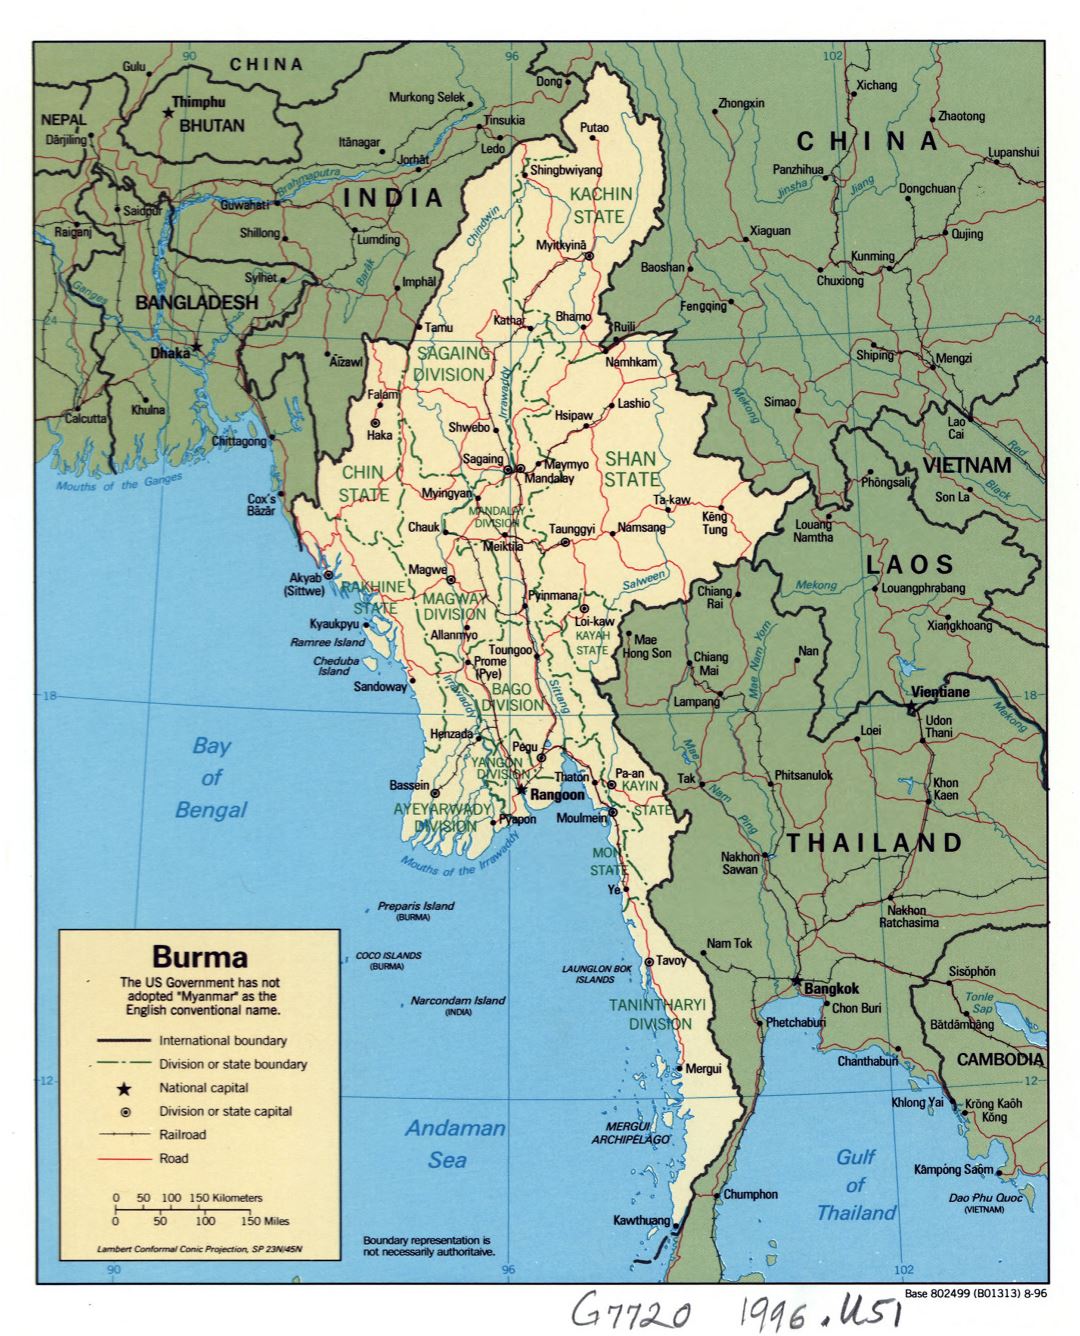 Grande detallado mapa político y administrativo de Birmania (Myanmar) con carreteras, ferrocarriles y principales ciudades - 1996